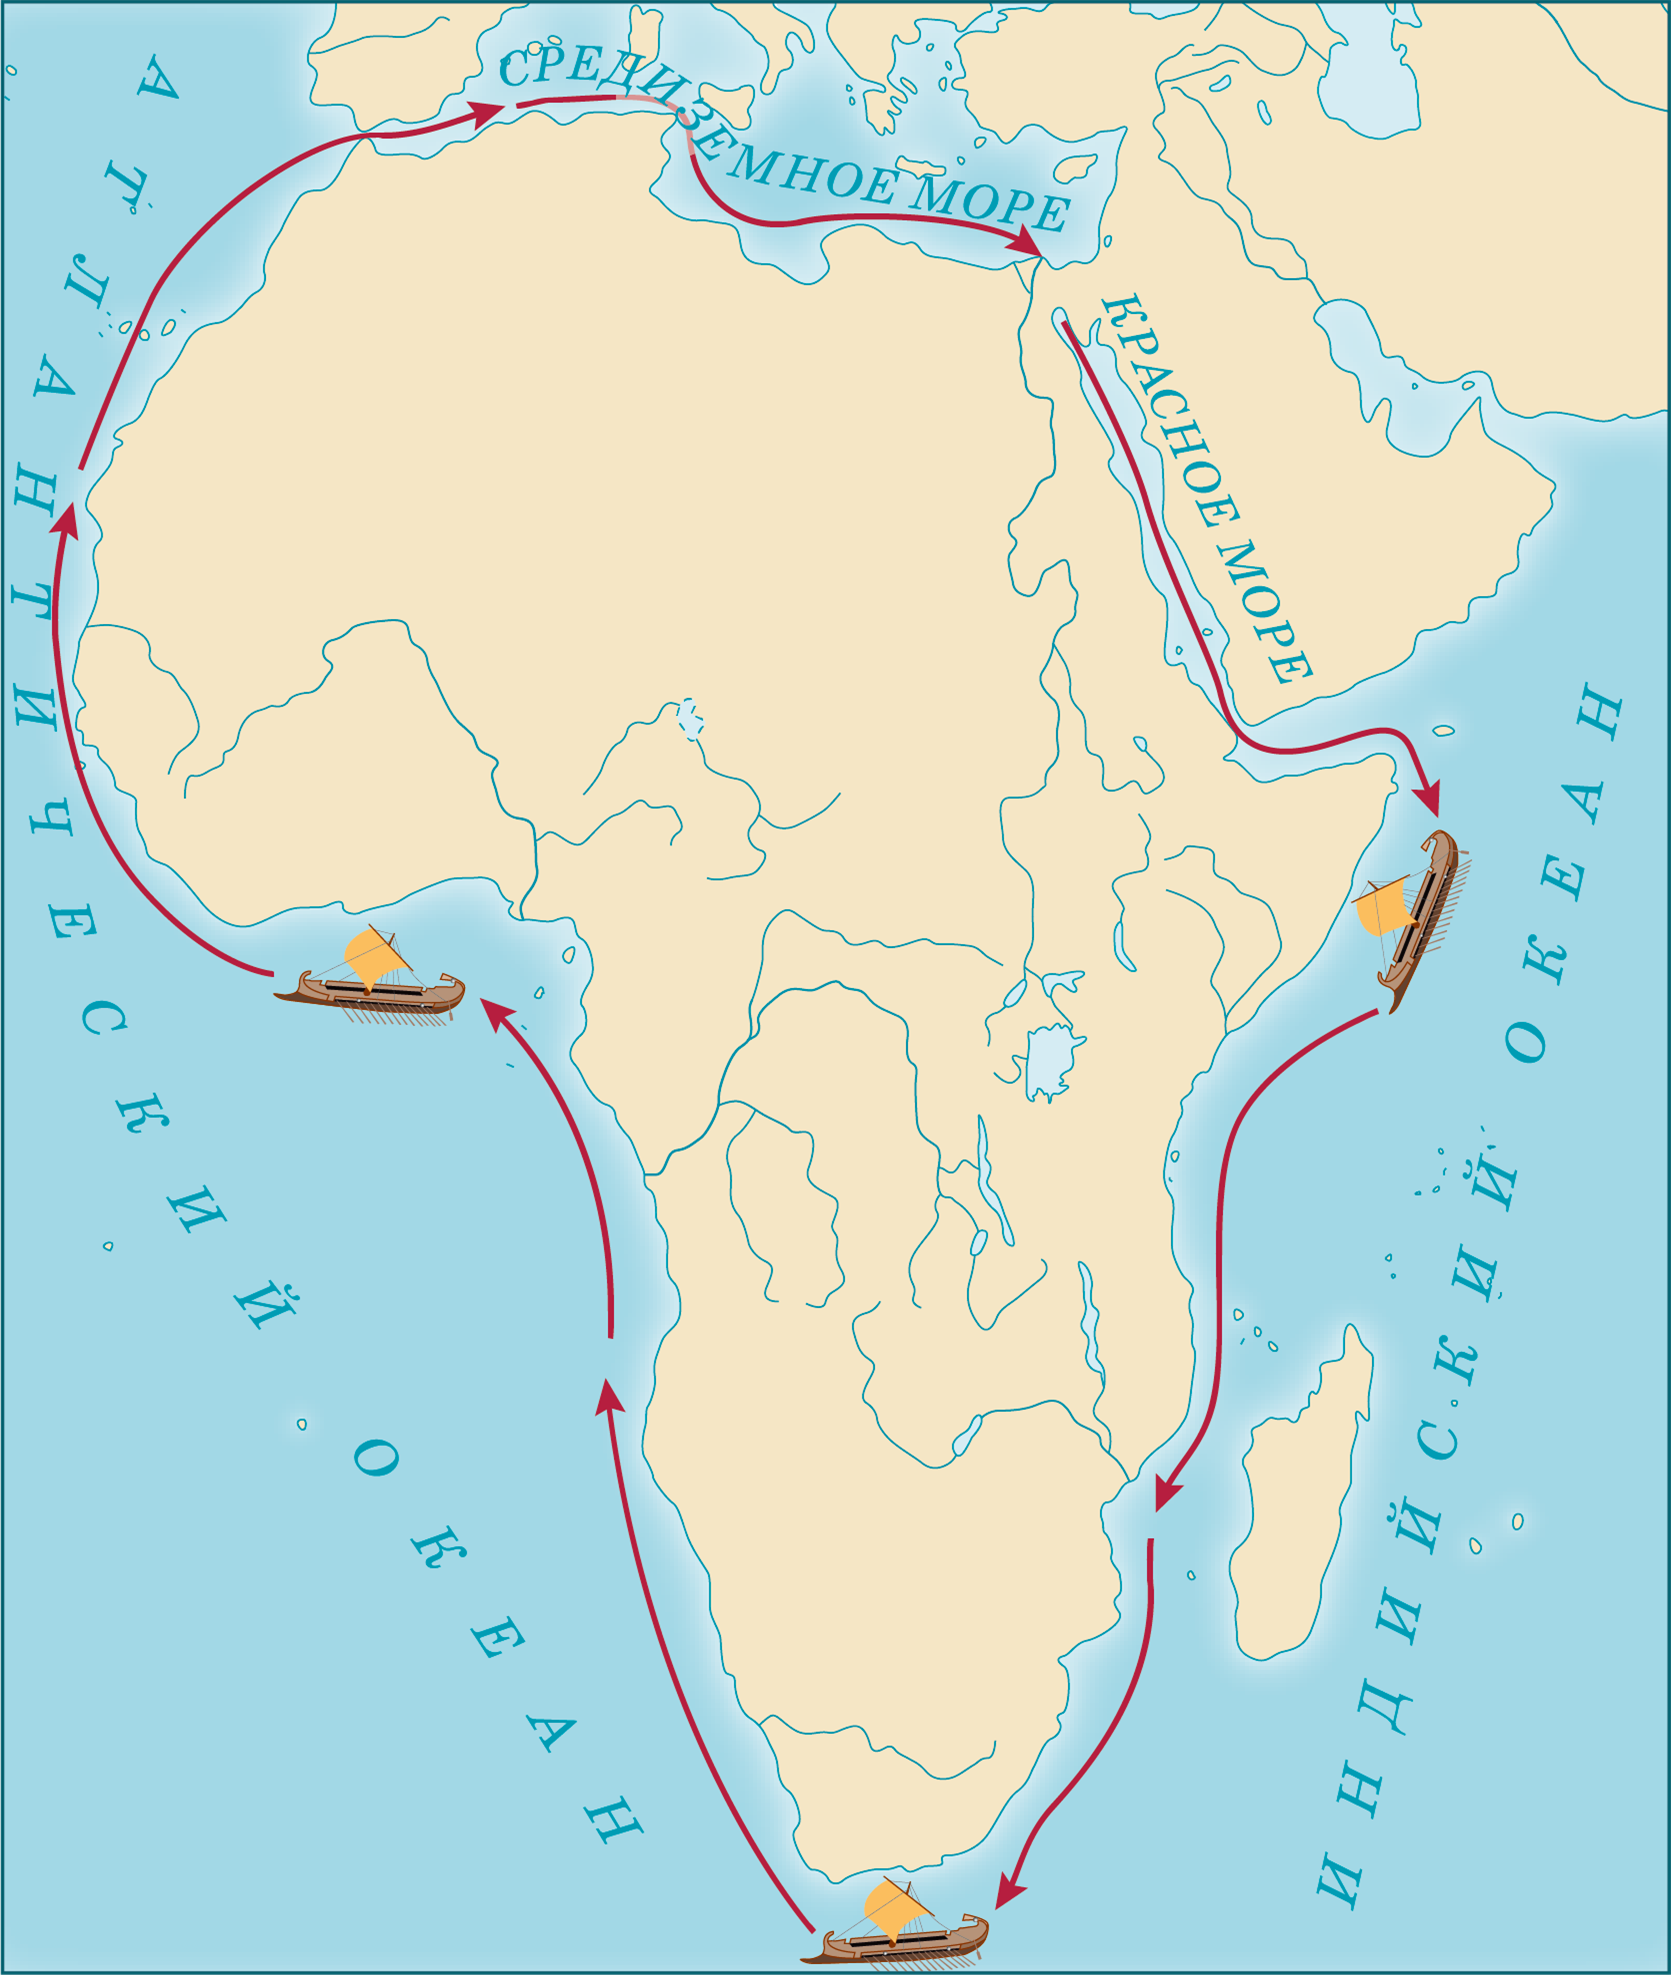 1 морское путешествие вокруг африки. Плавание финикийцев вокруг Африки из Египта. Путь плавания финикийцев вокруг Африки. Карта путешествия финикийцев вокруг Африки. Путешествие финикийцев вокруг Африки из Египта.